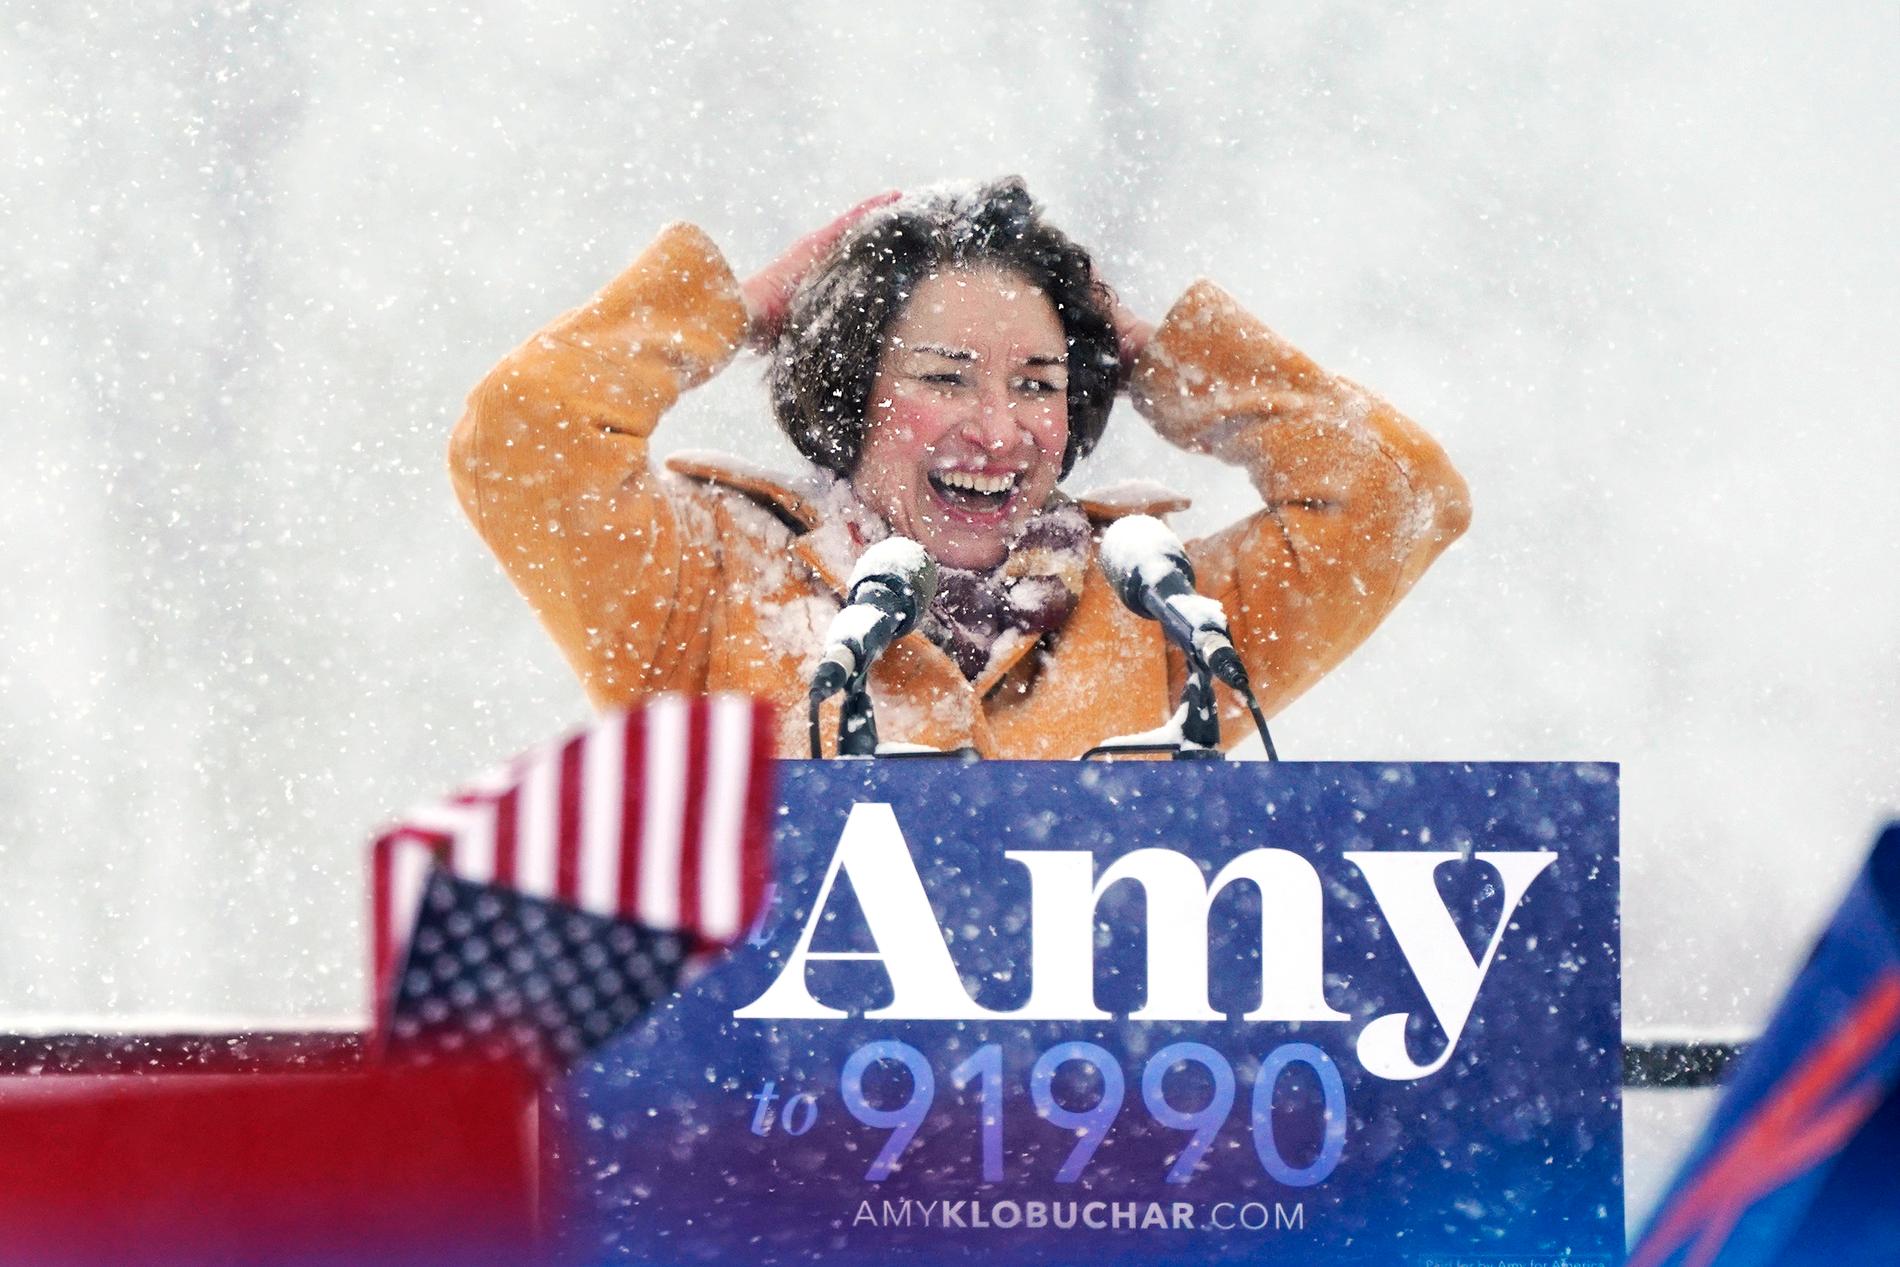 Den demokratiska senatorn Amy Klobuchar kickar igång sin presidentvalskampanj med ett möte i snöstor på Boom Island-parken i Minneapolis i Minnesota.